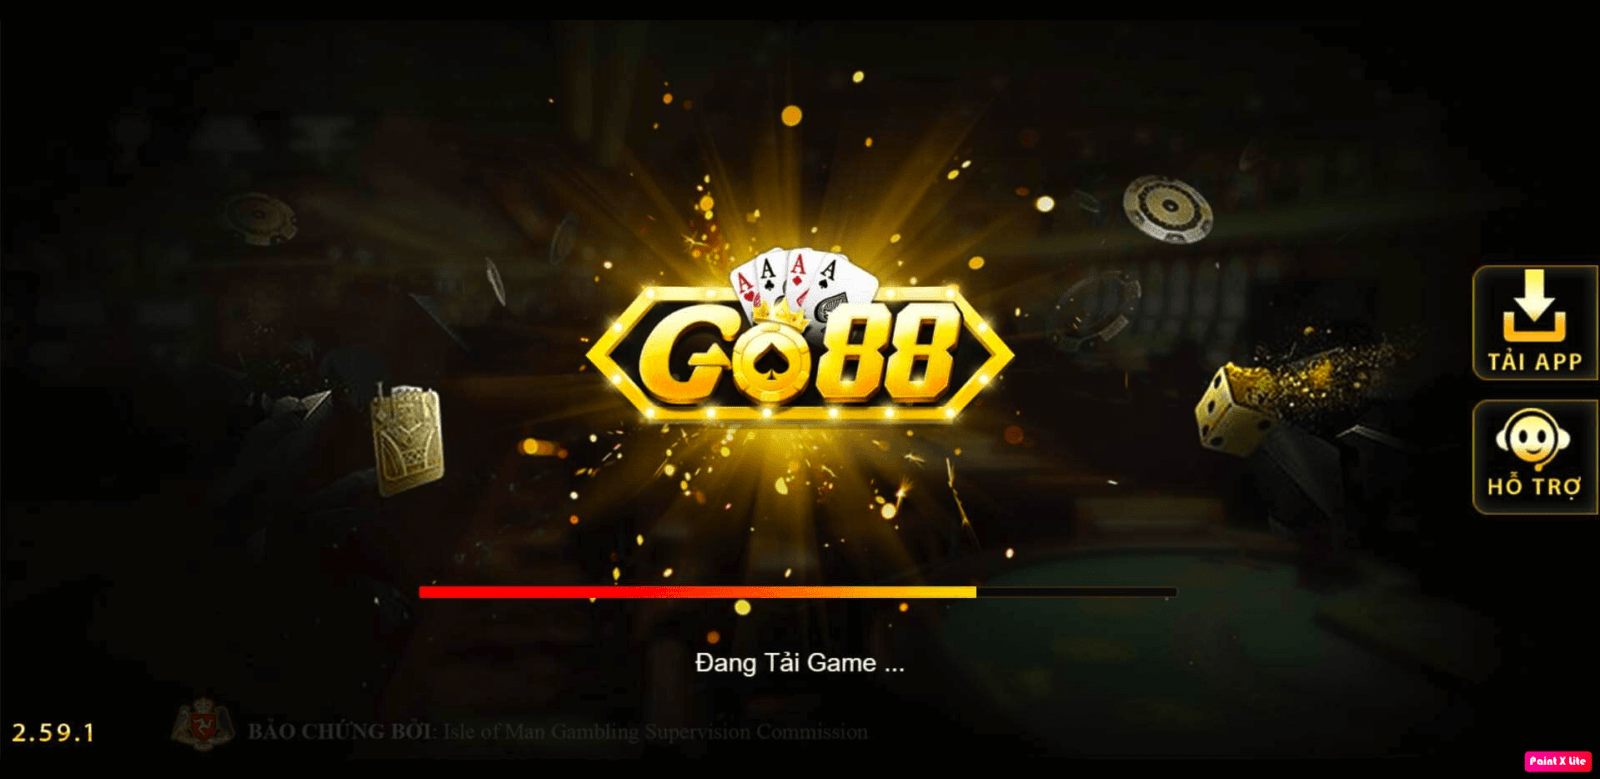 Go88 là một cổng game con của GamVip